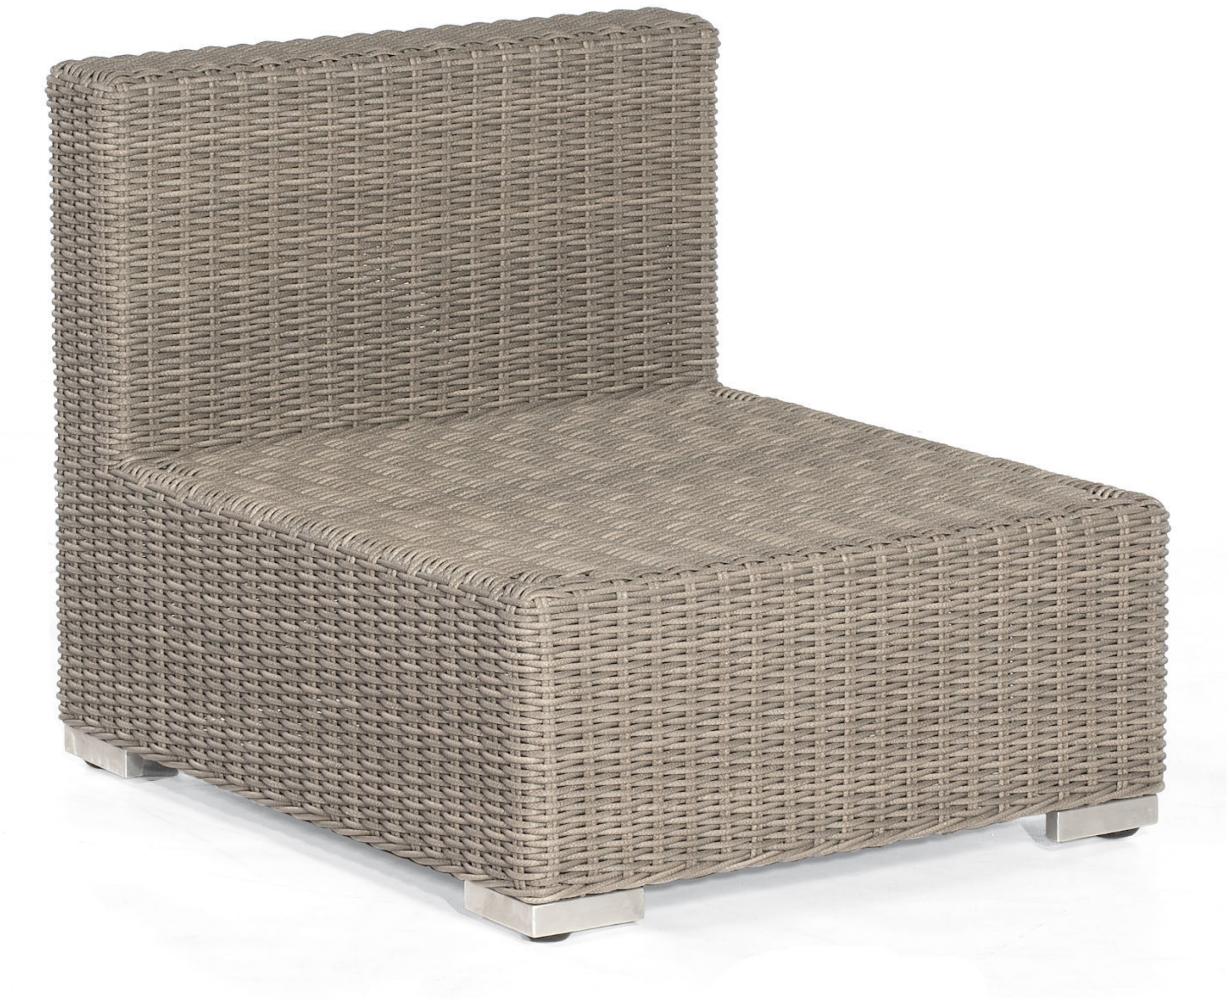 Sonnenpartner Lounge-Mittelmodul Residence Aluminium mit Polyrattan stone-grey inklusive Kissen Loun Bild 1